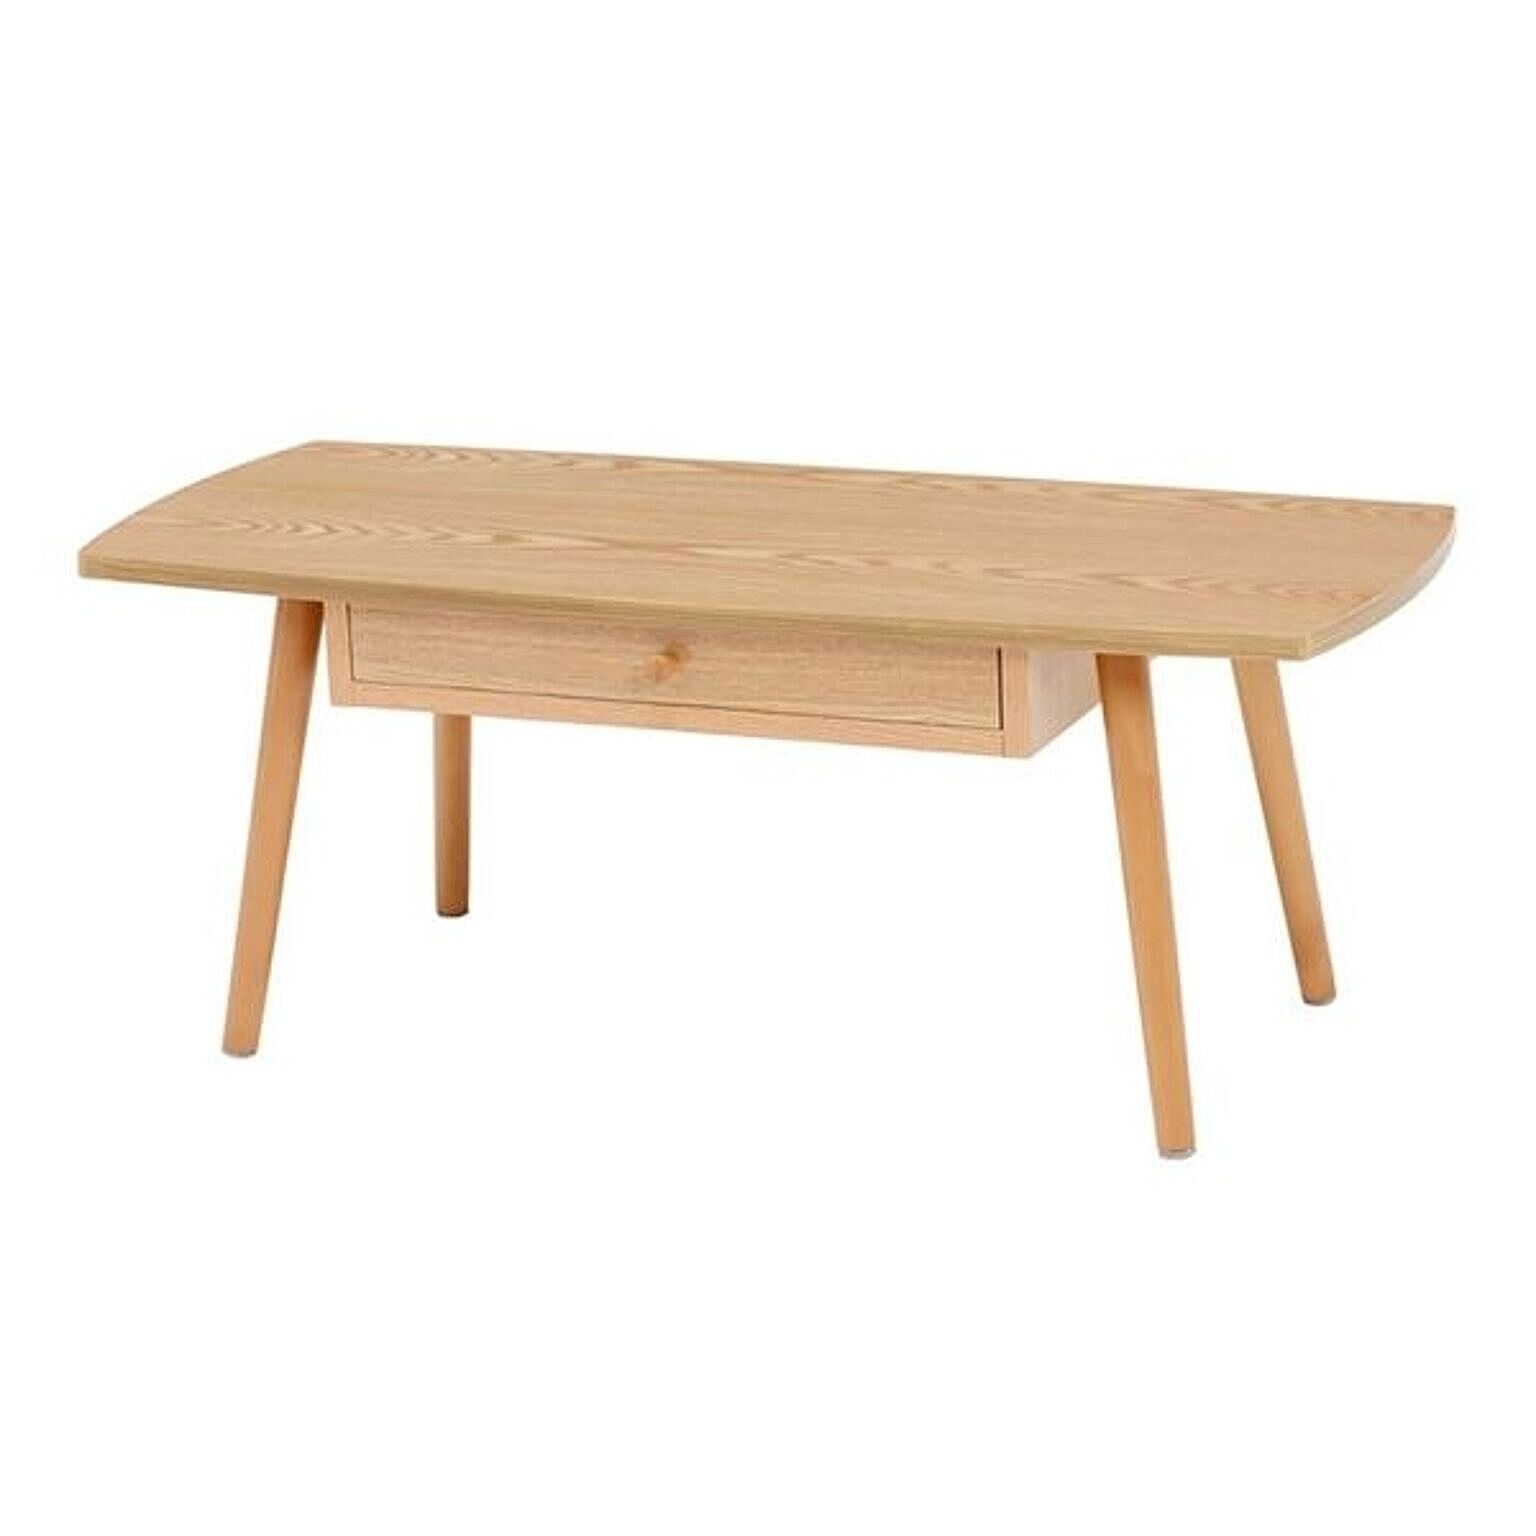 センターテーブル/ローテーブル 【高さ37cm】 引き出し 木製脚付き スクエア型 組立品 〔リビング〕【代引不可】